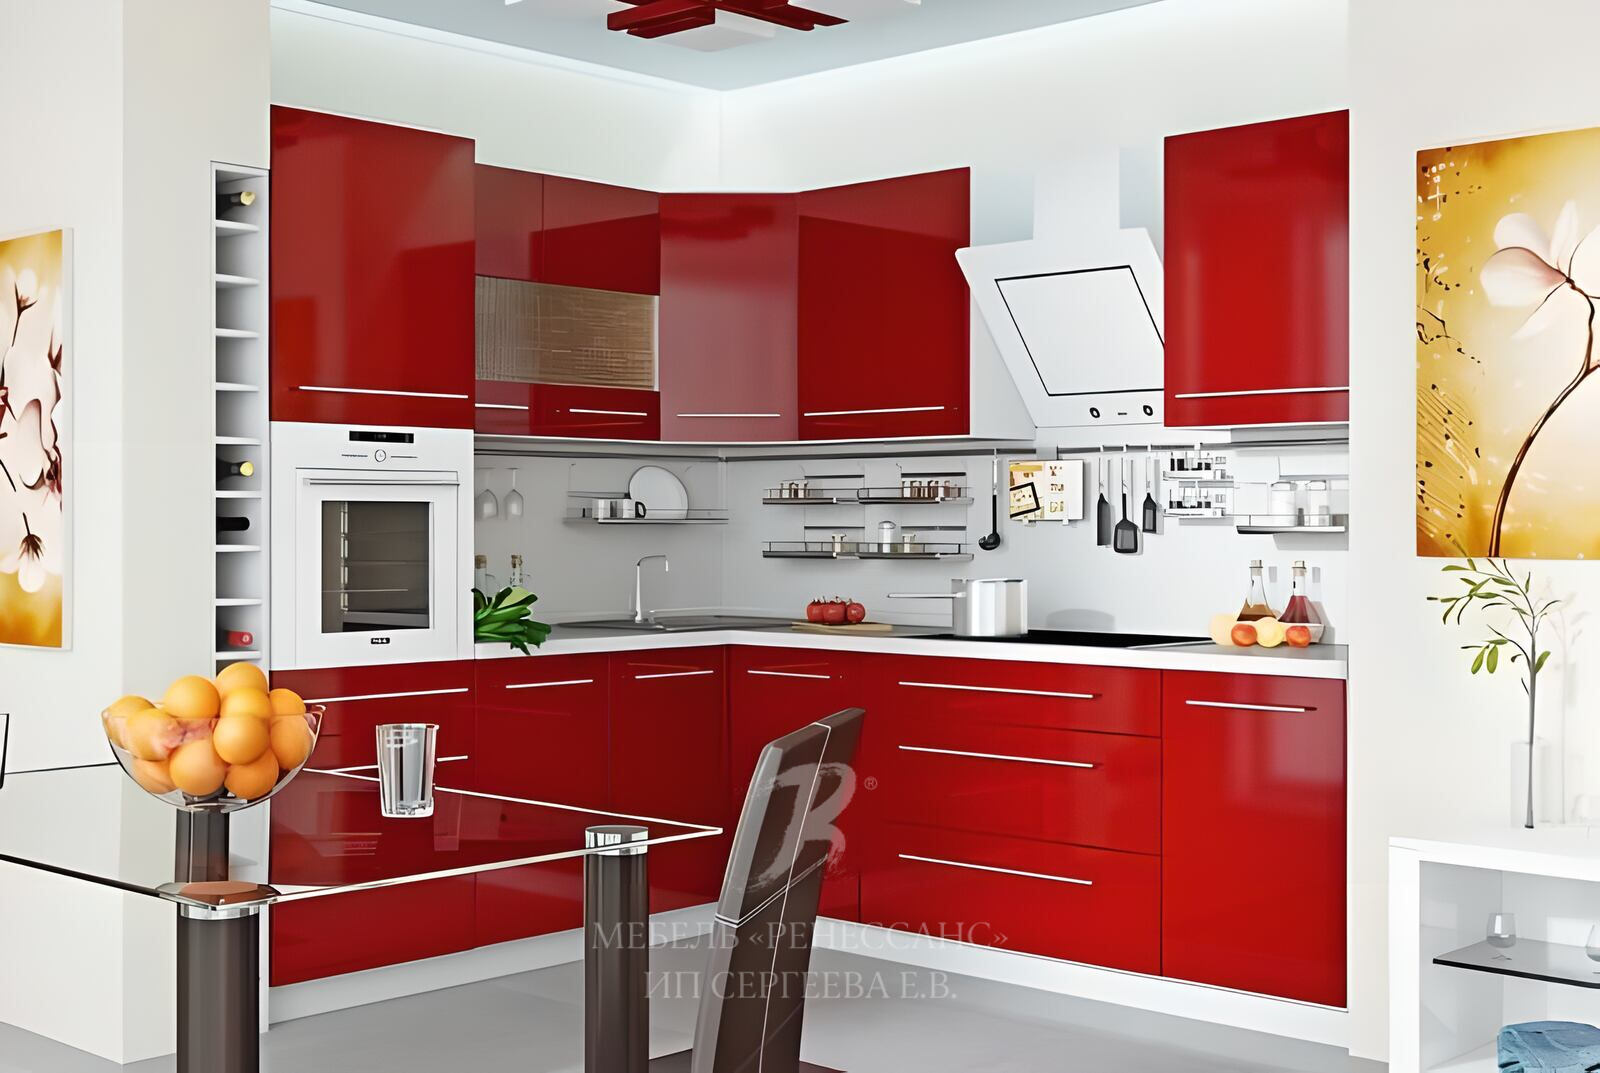 Deshevaya mebel ru. Кухонная мебель. Кухня гарнитур. Красные кухни. Красивая кухонная мебель.